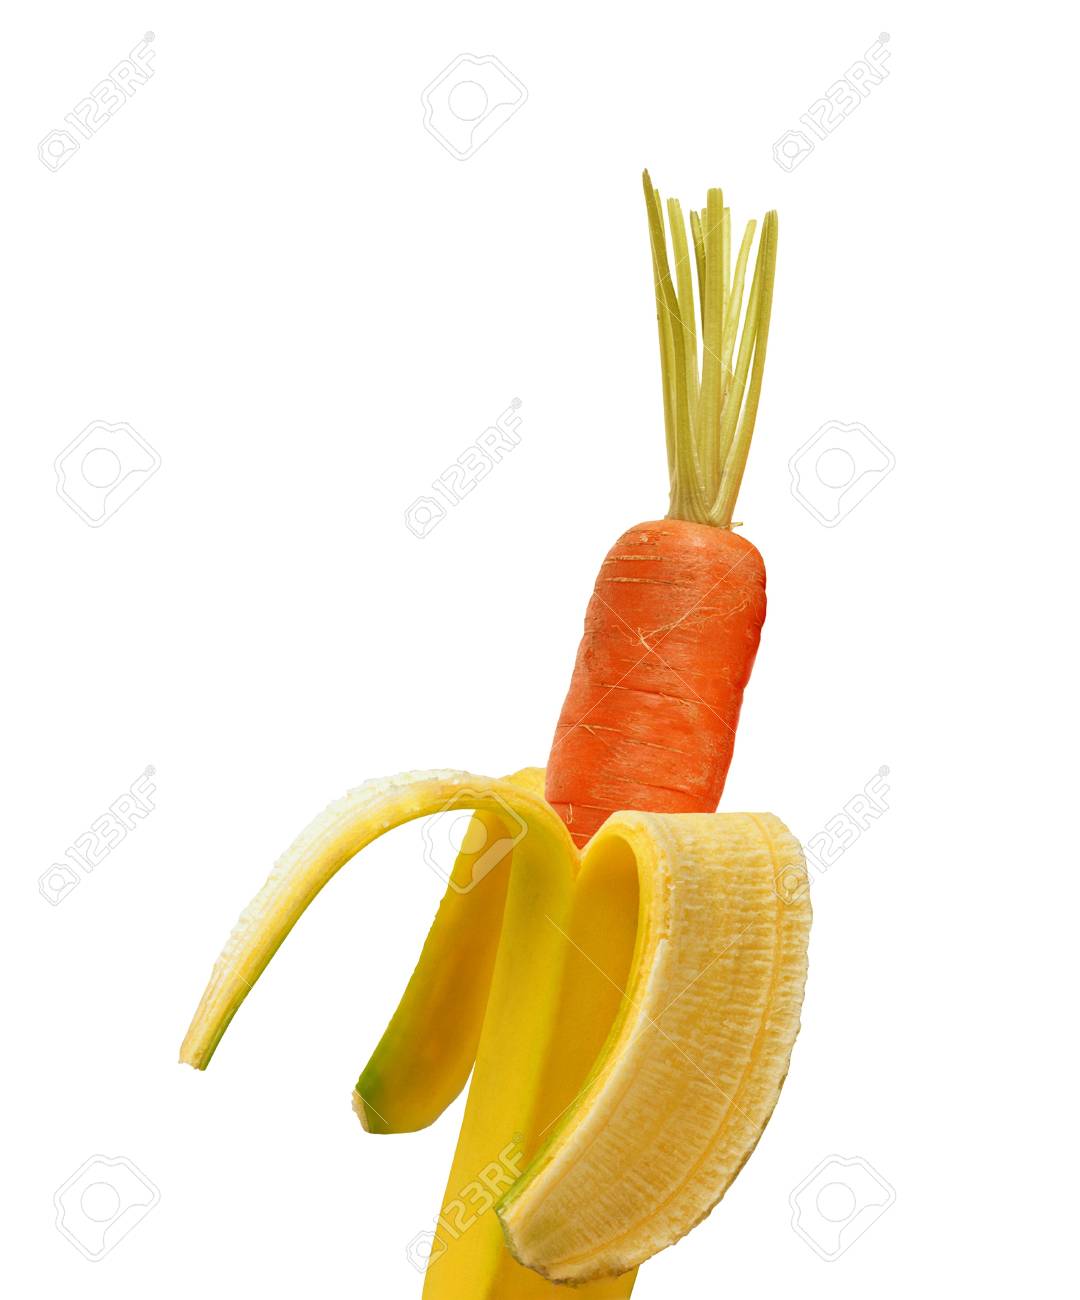 12402058-carrot-inside-of-banana-isolated-on-white.jpg